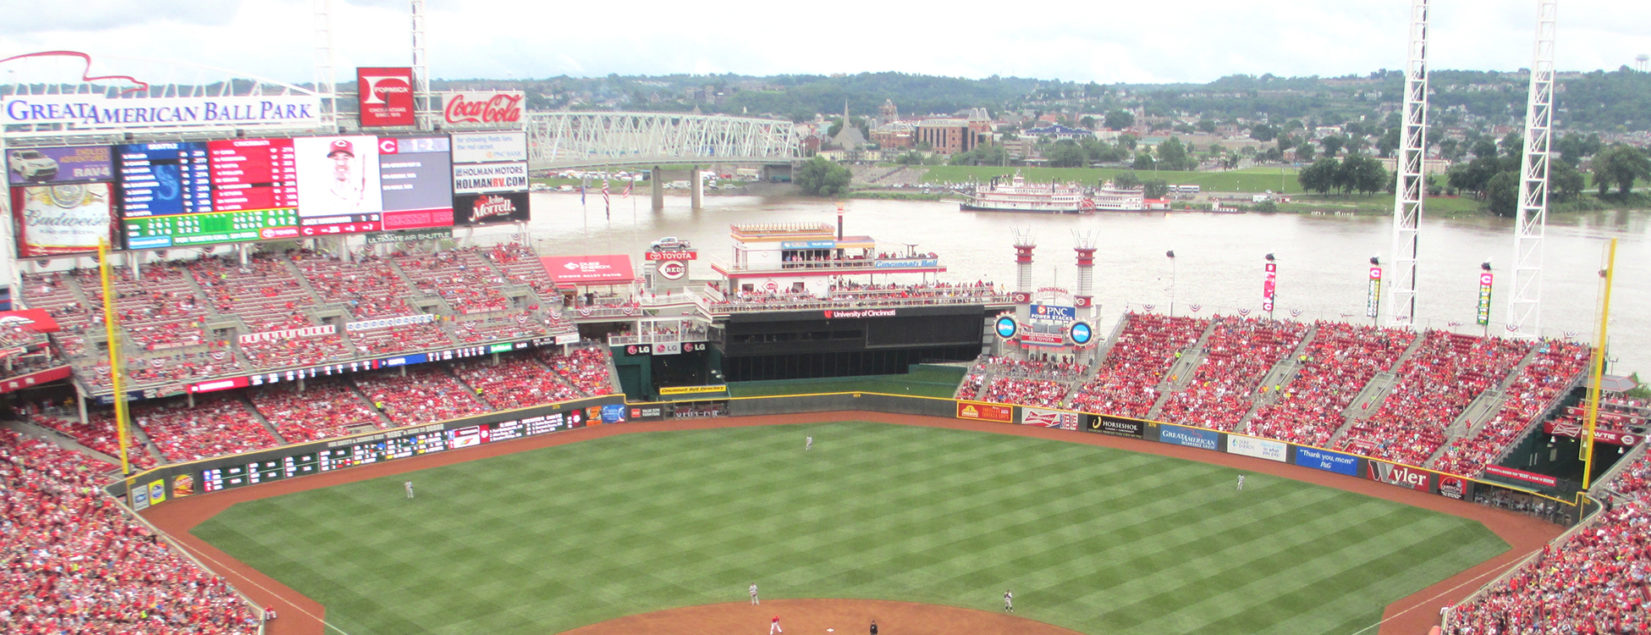 Cincinnati Reds Ballpark: Great American Ball Park